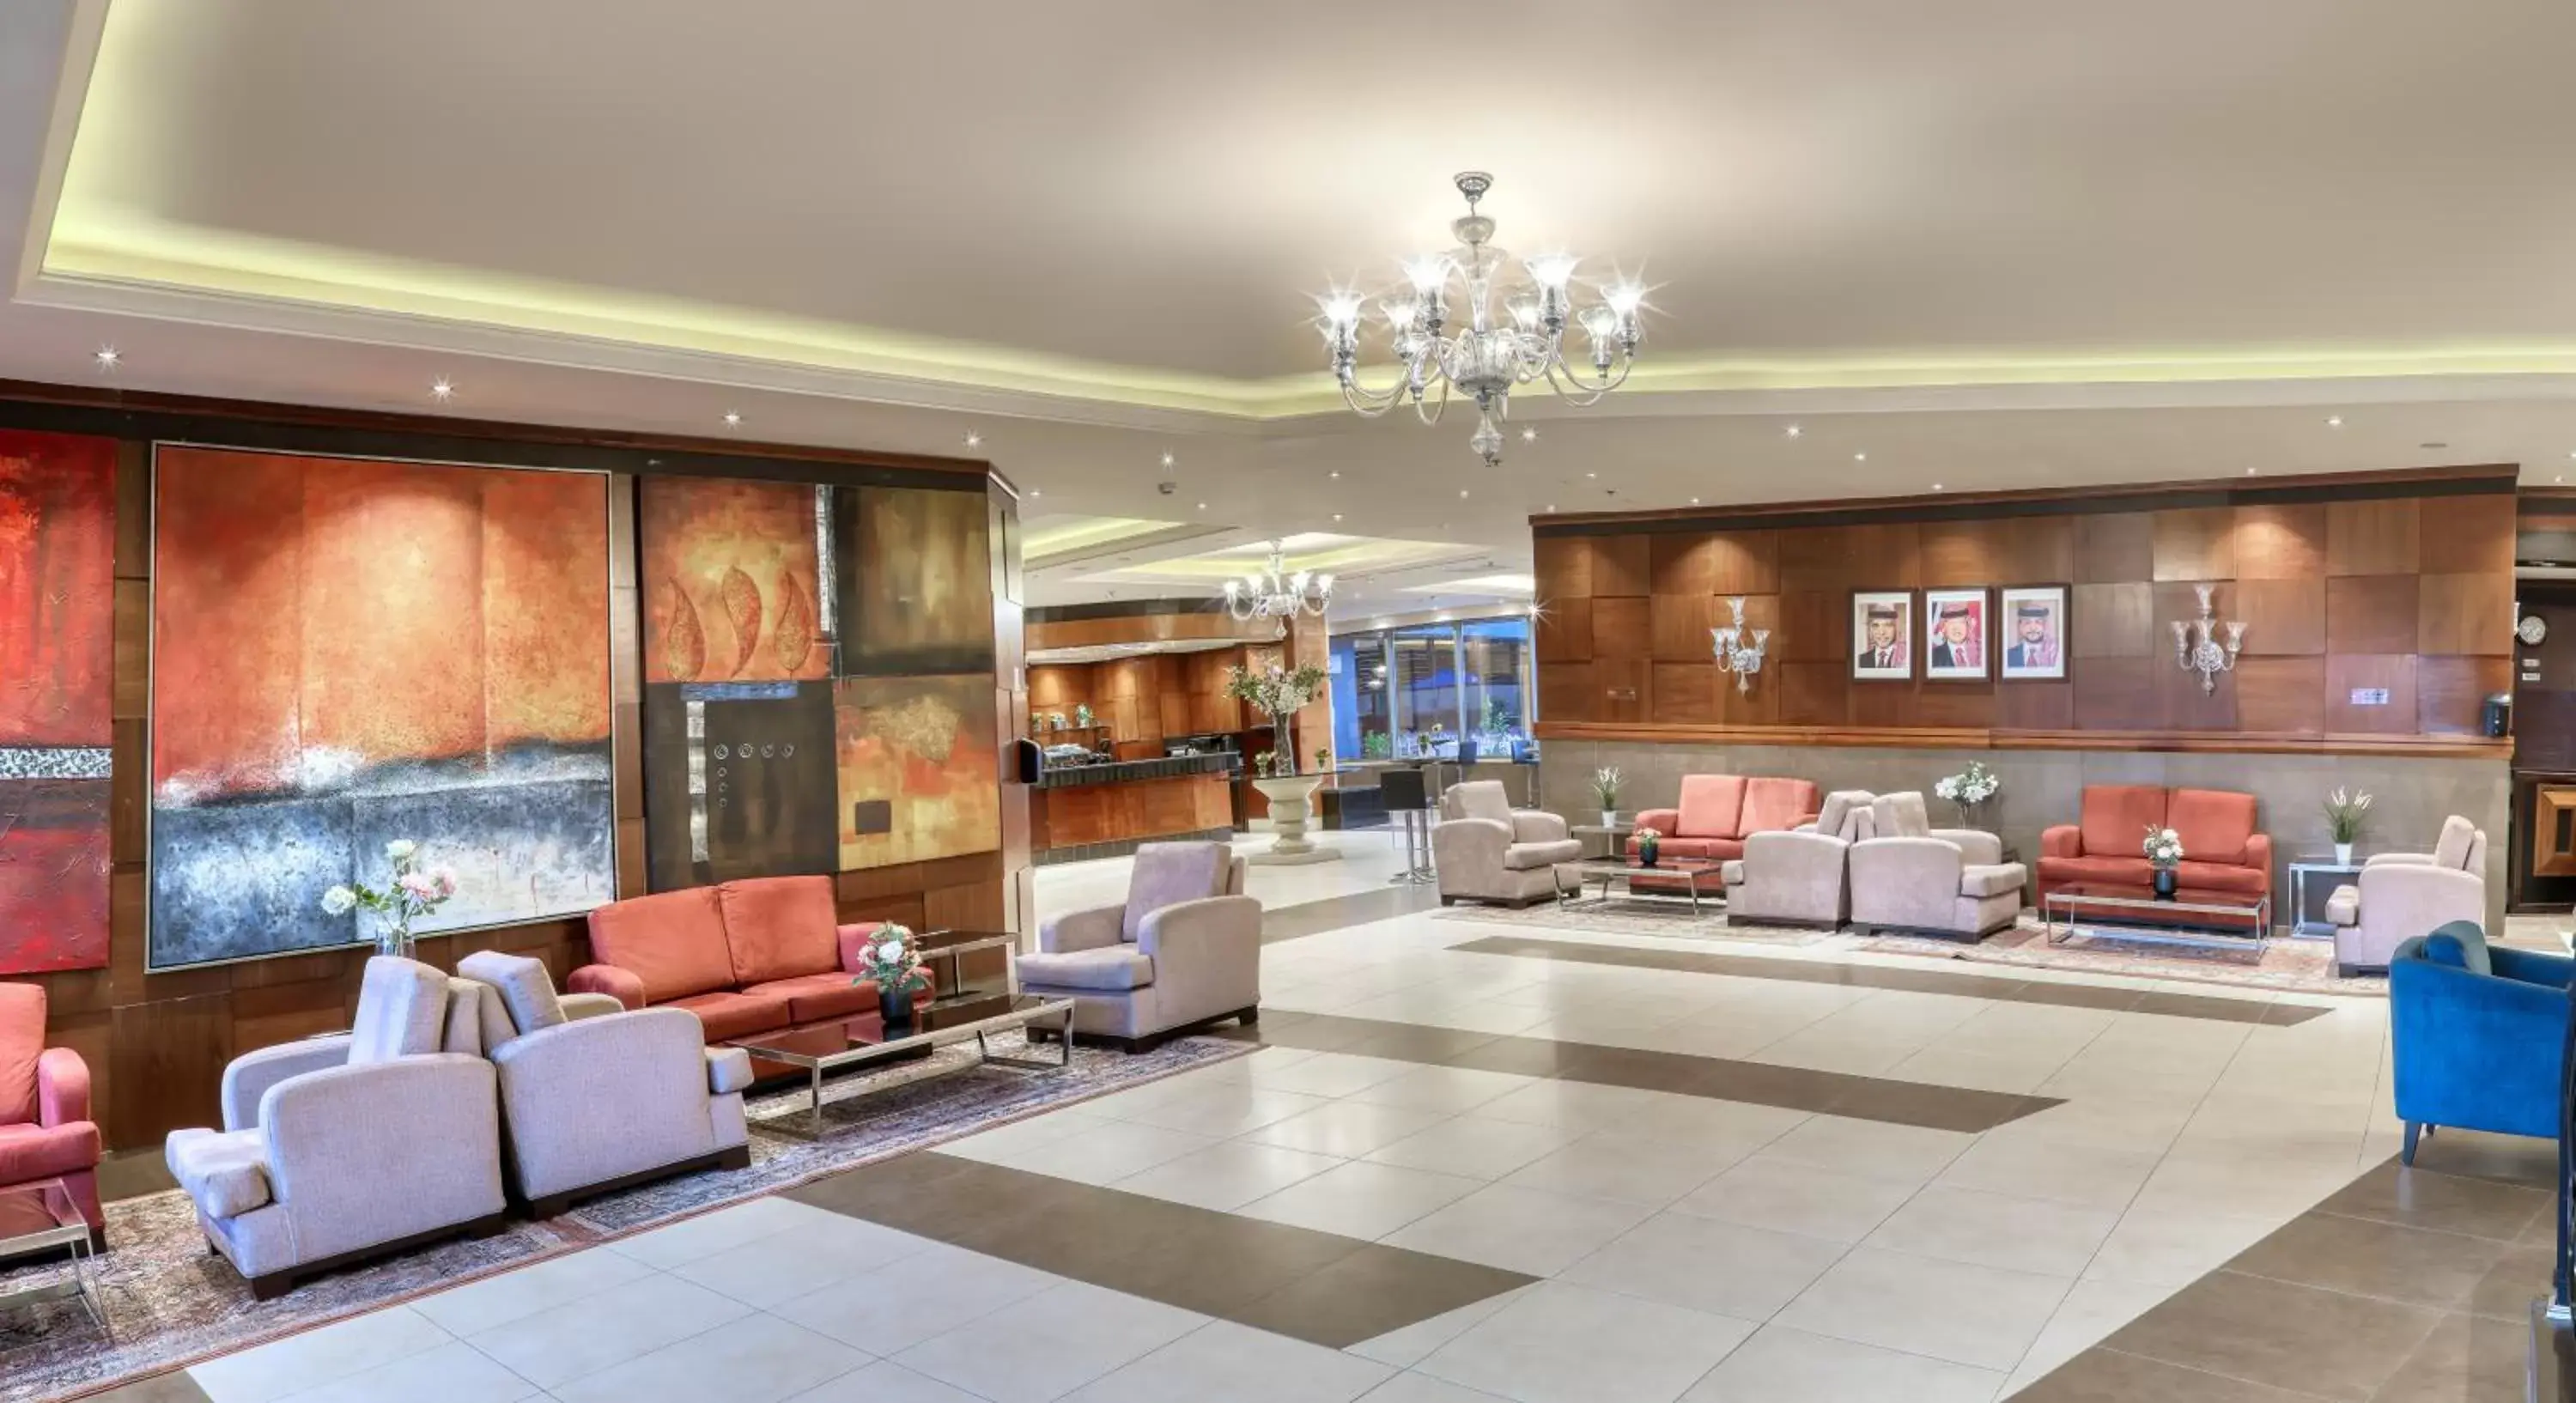 Lobby or reception, Lobby/Reception in Geneva Hotel